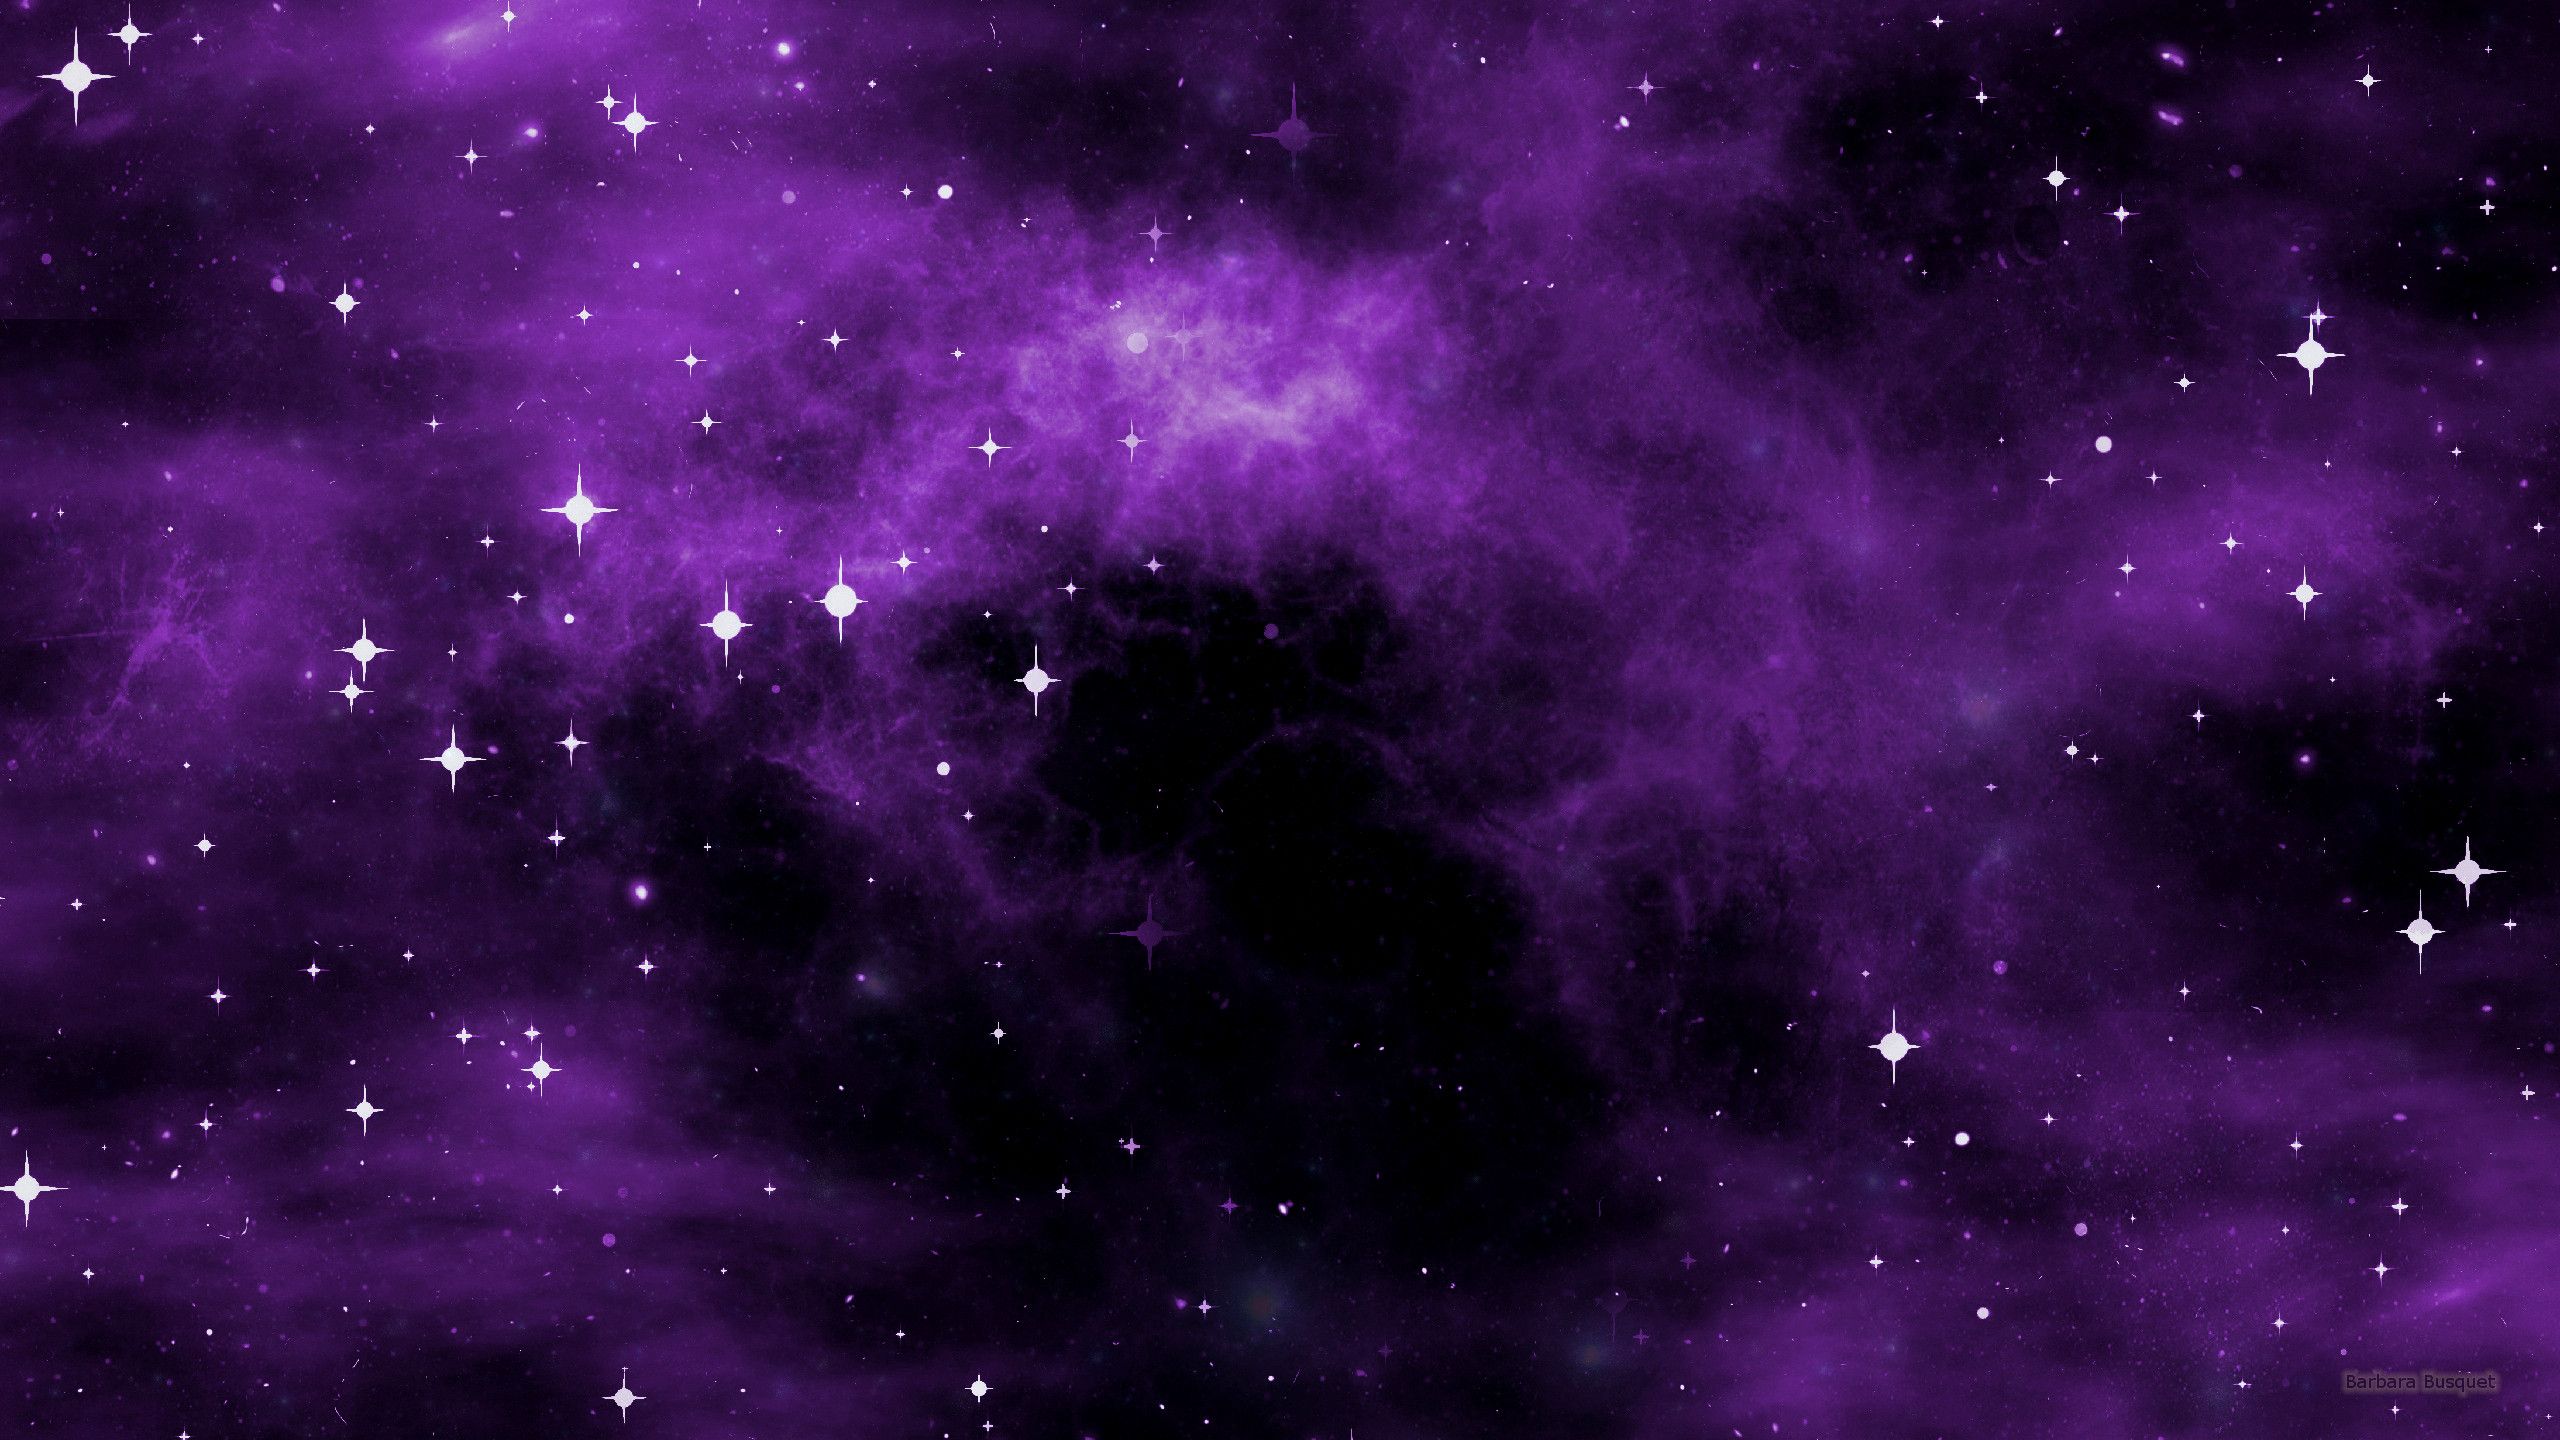 Hình nền Thiên hà màu tím đẹp sẽ khiến bạn say đắm trong cuộc hành trình khám phá vũ trụ. Những mảng tím lạ mắt, những hạt sao lung linh sẽ làm bạn không thể rời mắt khỏi chiếc điện thoại của mình. Hãy cập nhật ngay hình nền Thiên hà màu tím đẹp này trên điện thoại của bạn.